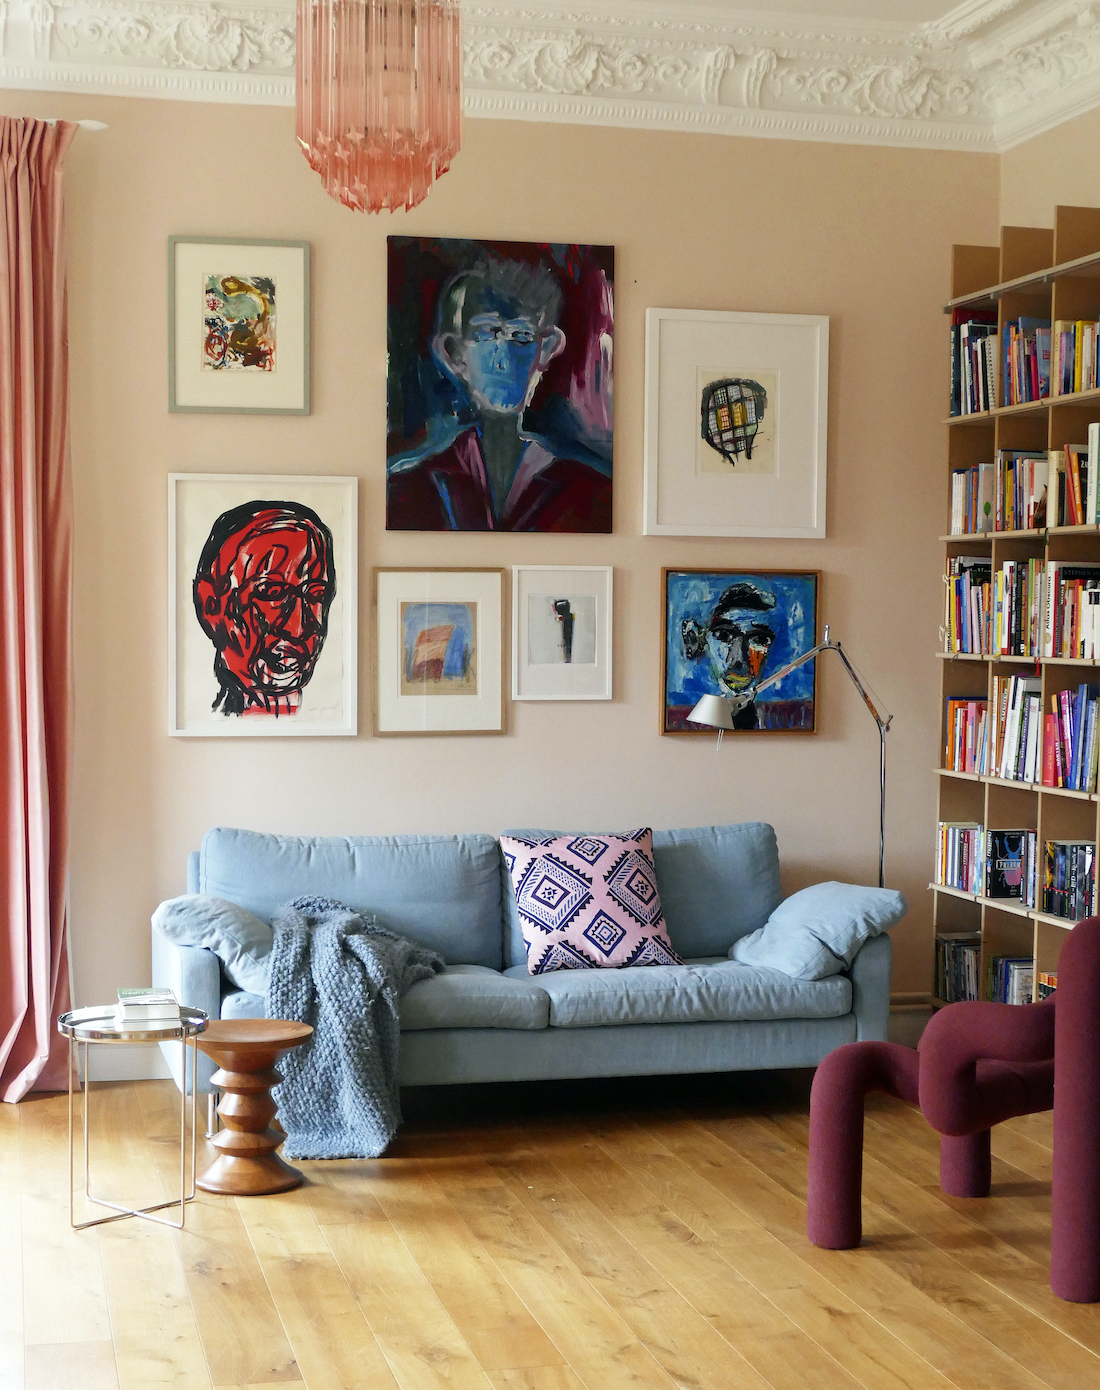 Kunstwerk: Malerei von Fahar, Portrait im Wohnzimmer bei Eva Kaiser (Lumikello), Torhaus Warnau